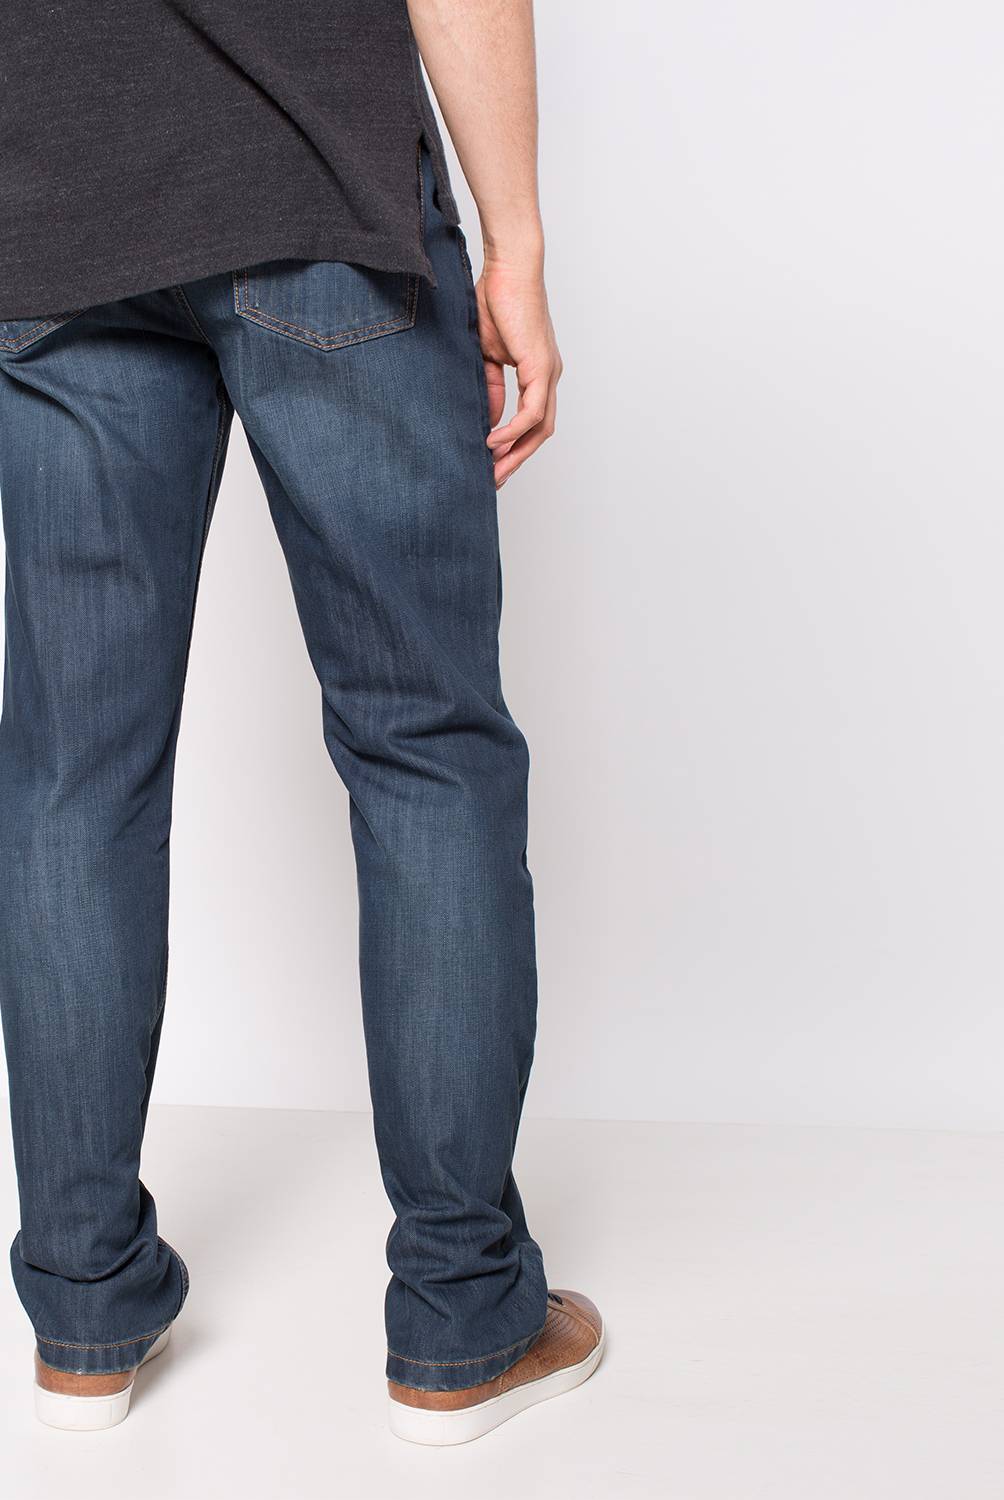 LEE - Lee Jeans Brooklyn Regular Fit